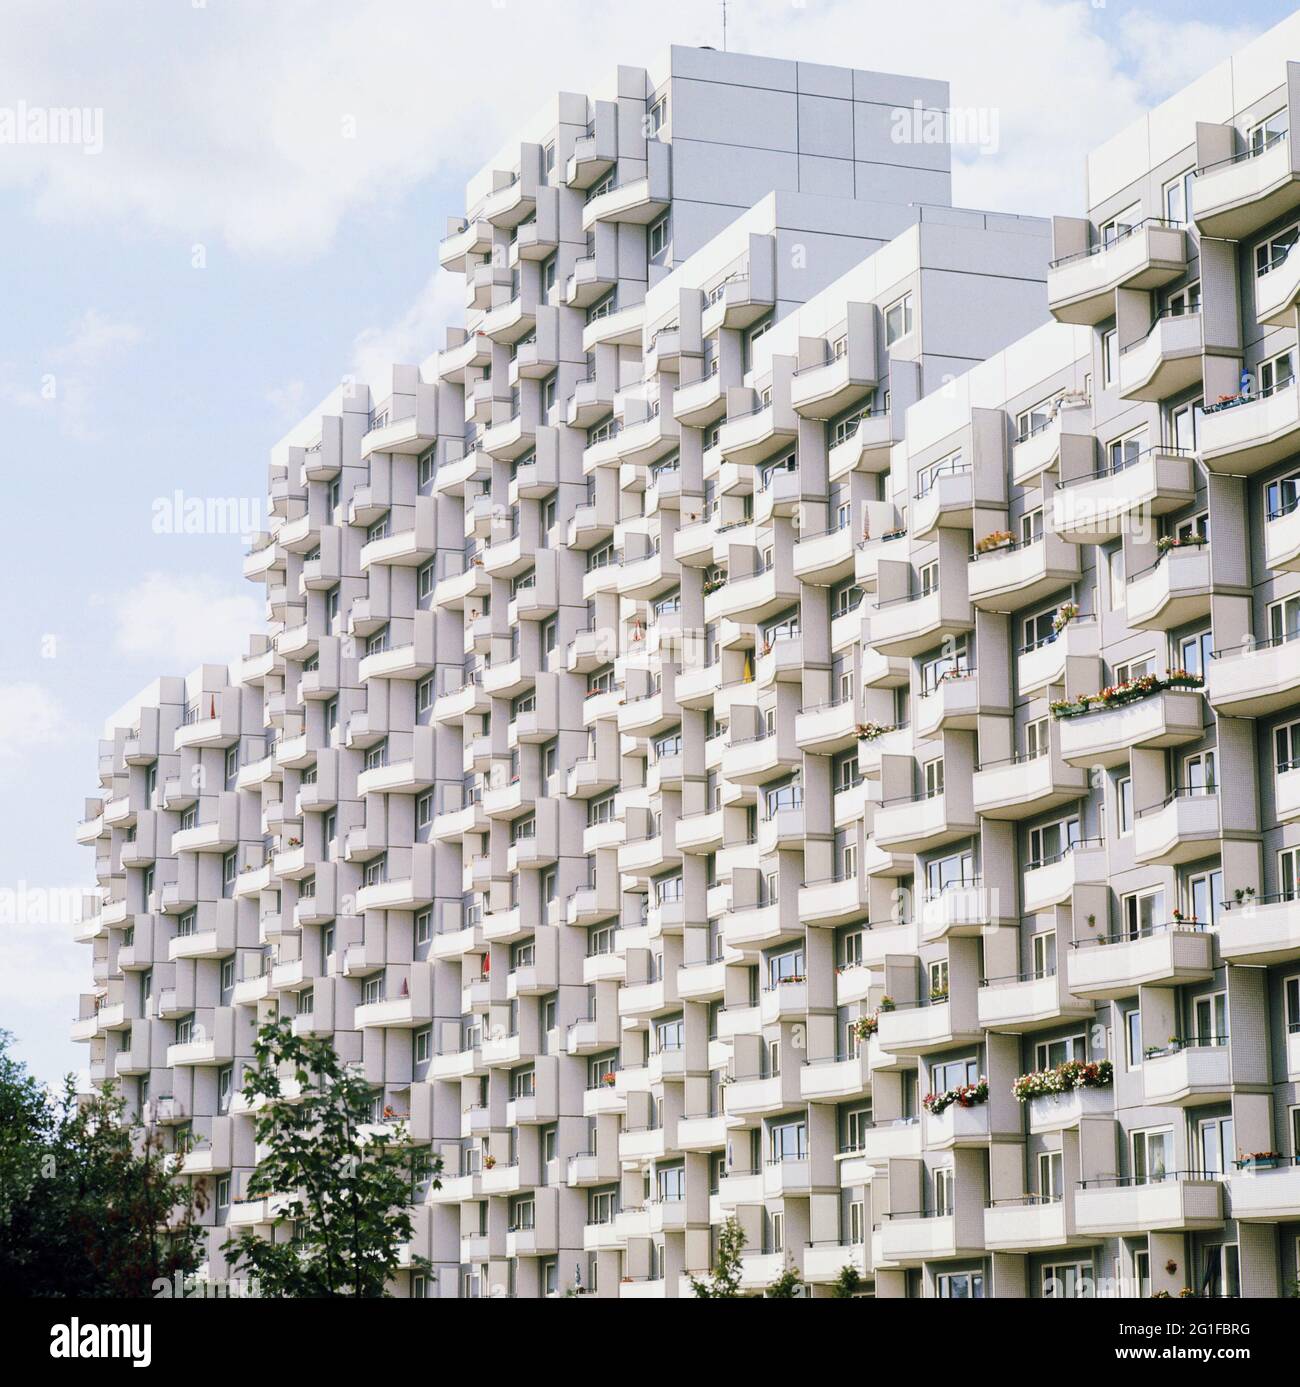 Architektur, mehrstöckiges Gebäude, Wohnanlage 'Osdorfer Born' in Hamburg, 1971, ZUSÄTZLICHE-RIGHTS-CLEARANCE-INFO-NOT-AVAILABLE Stockfoto